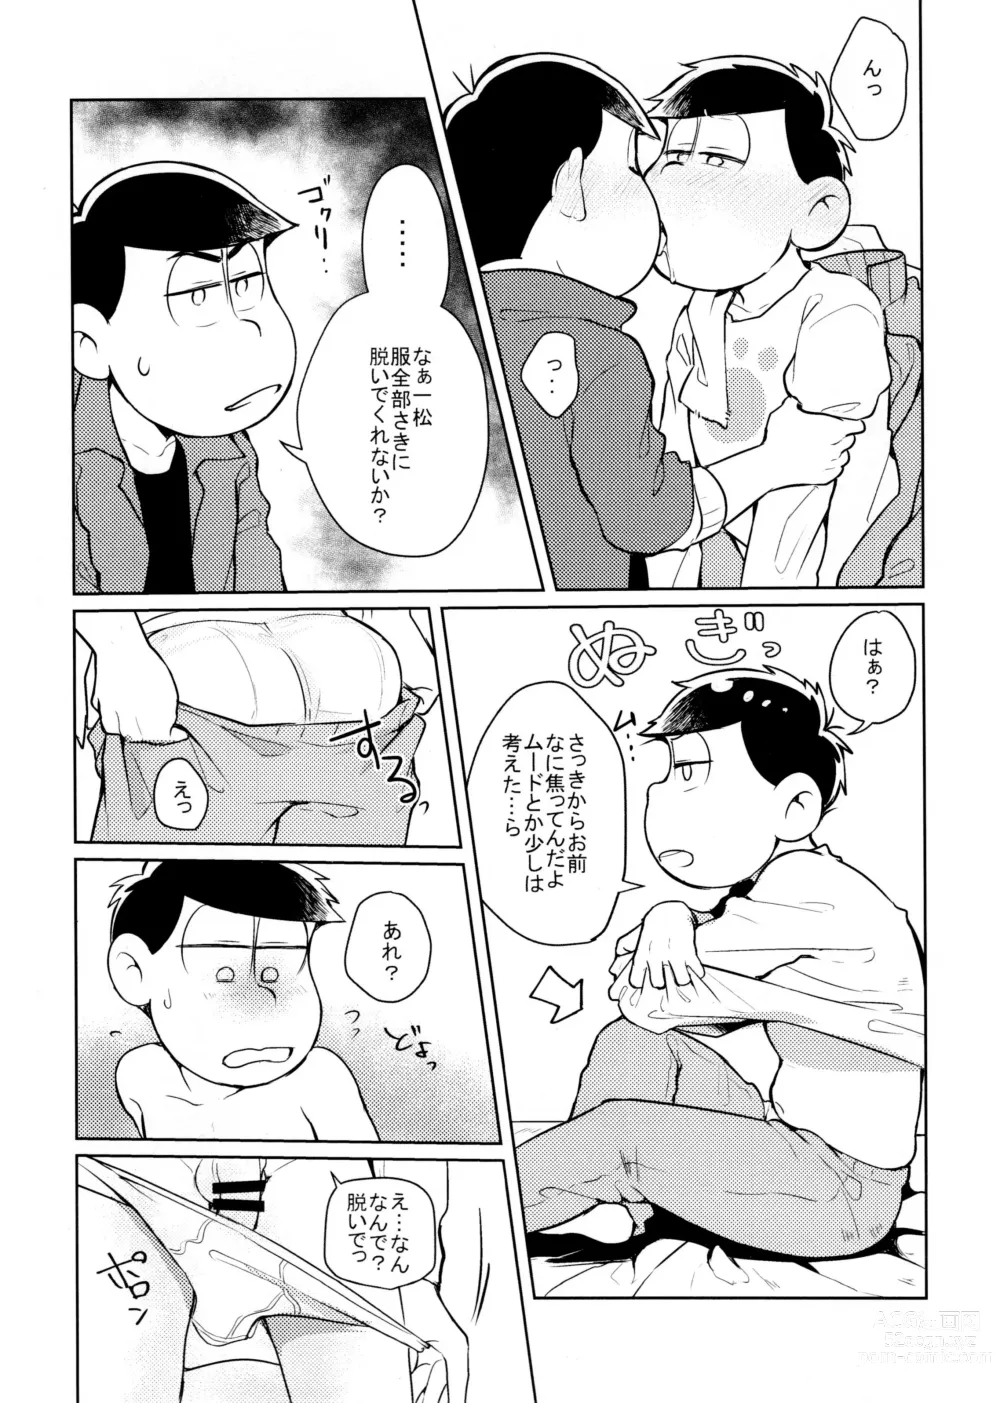 Page 6 of doujinshi Hyoushi Koukan Kikaku Goudoushi Matsuno Ichimatsu Onii-chan no Iinari ni Naranai